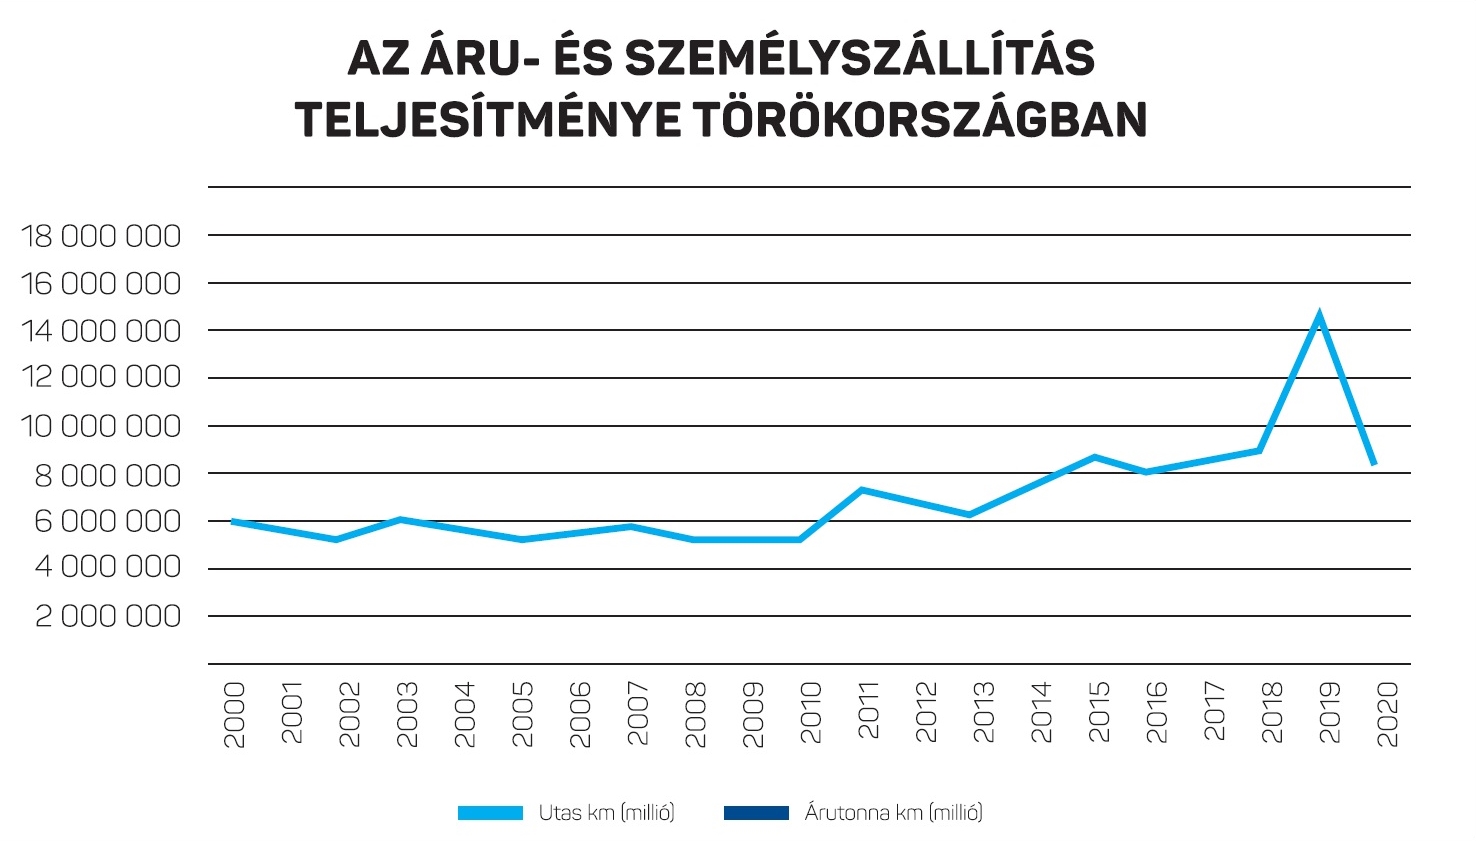 A török személyszállítás teljesítménye a két és félszeresére, az áruszállításé pedig másfélszeresére nőtt 2019-ig